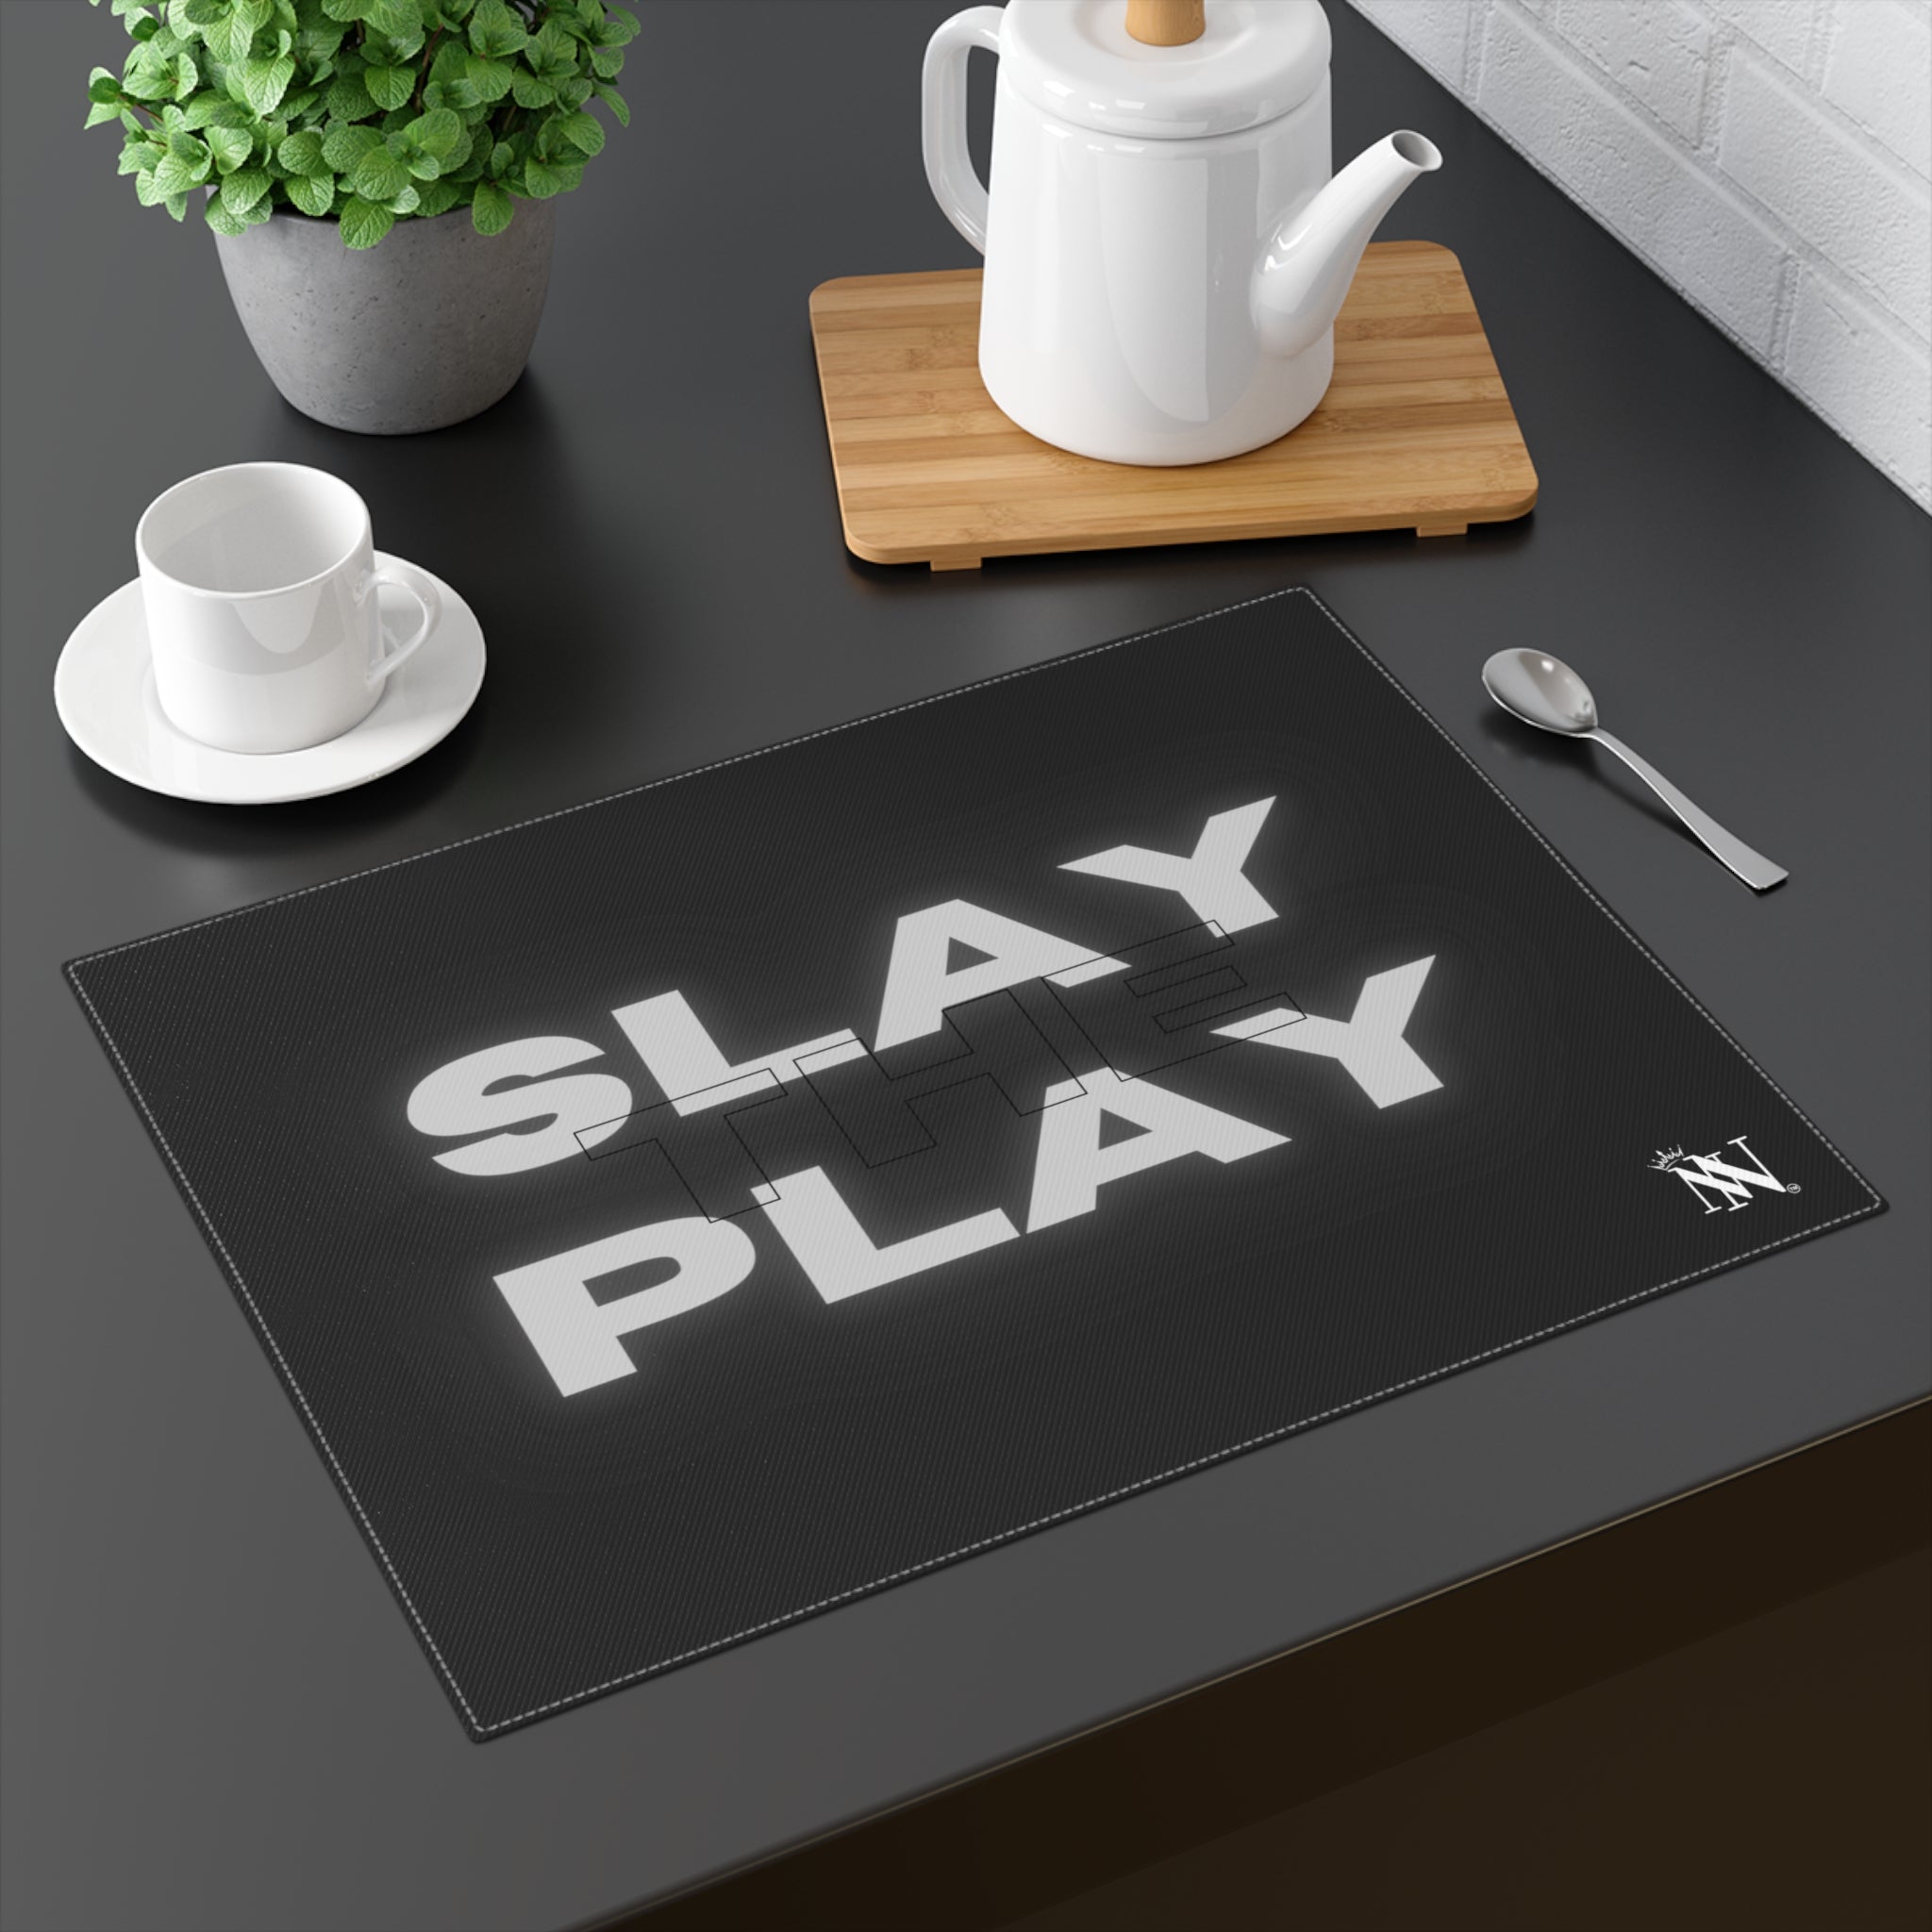 Slay sex toys mat